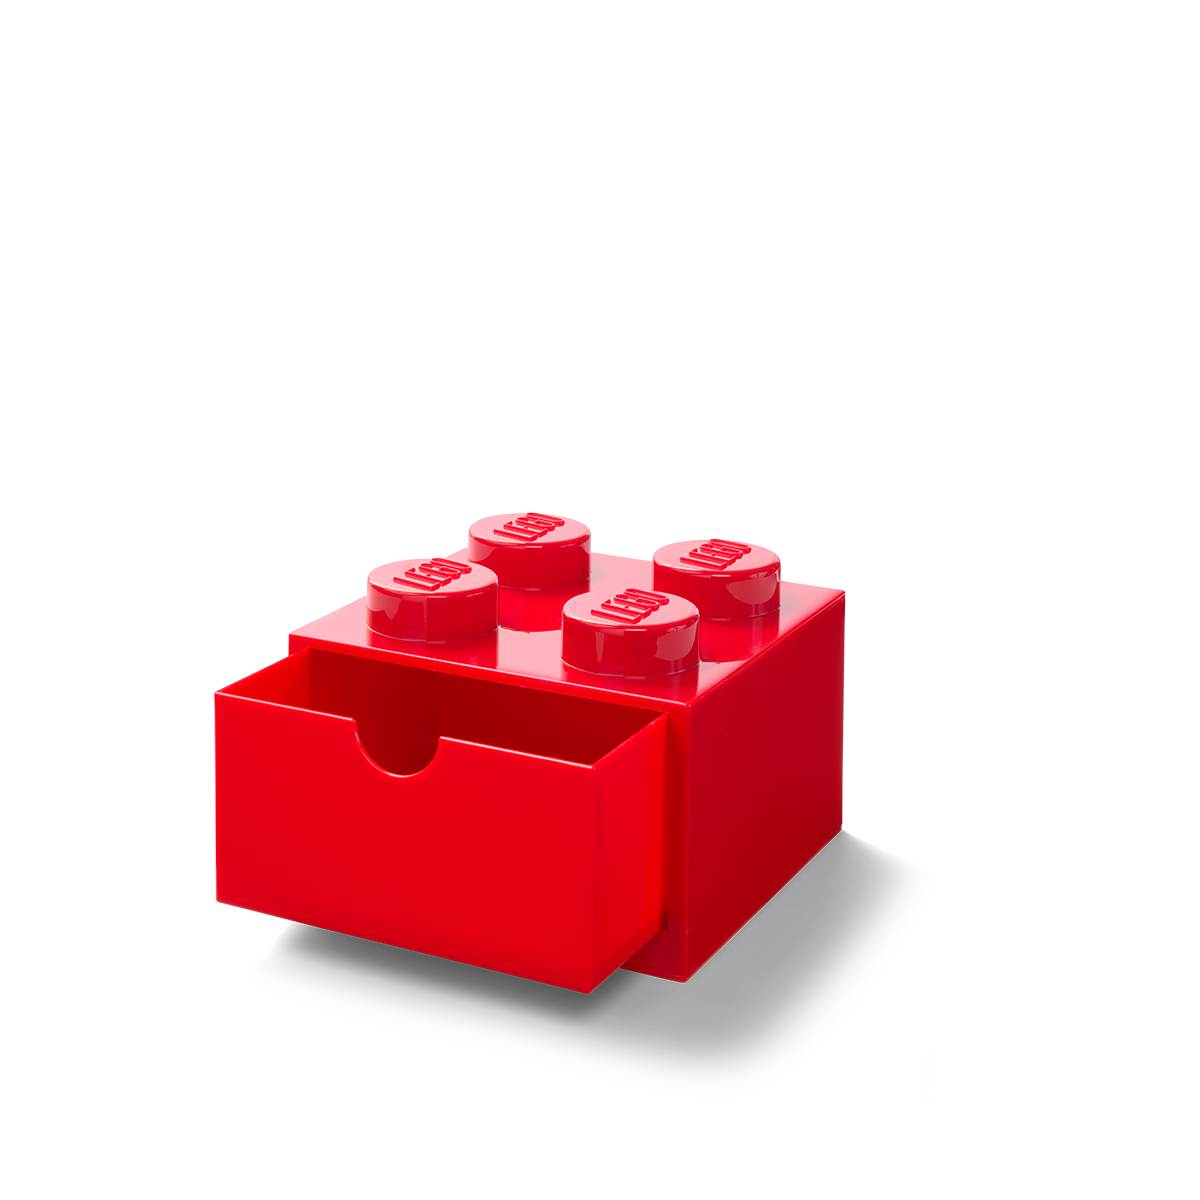 Acqua Contenitore Impilabile Mattoncino-contenitore Lego a 4 Bottoncini 5,7 Litri 